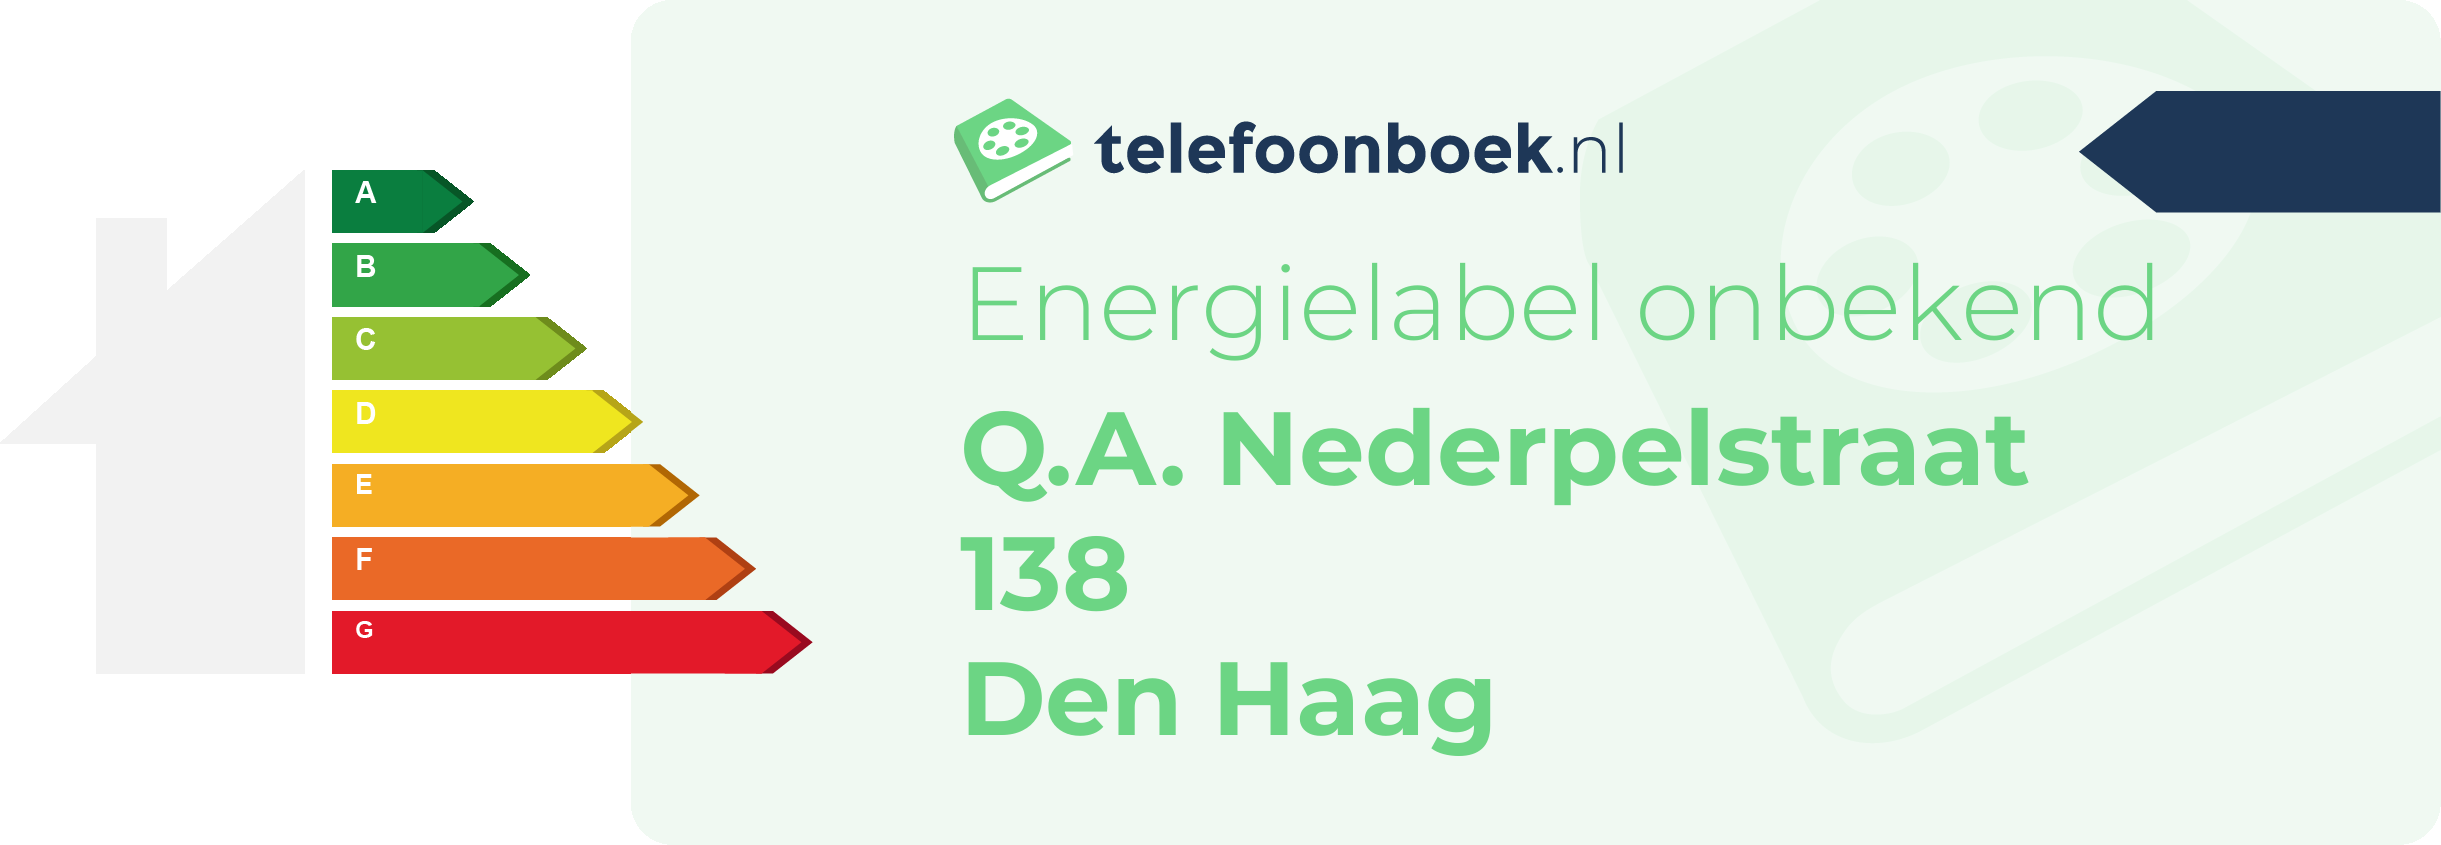 Energielabel Q.A. Nederpelstraat 138 Den Haag